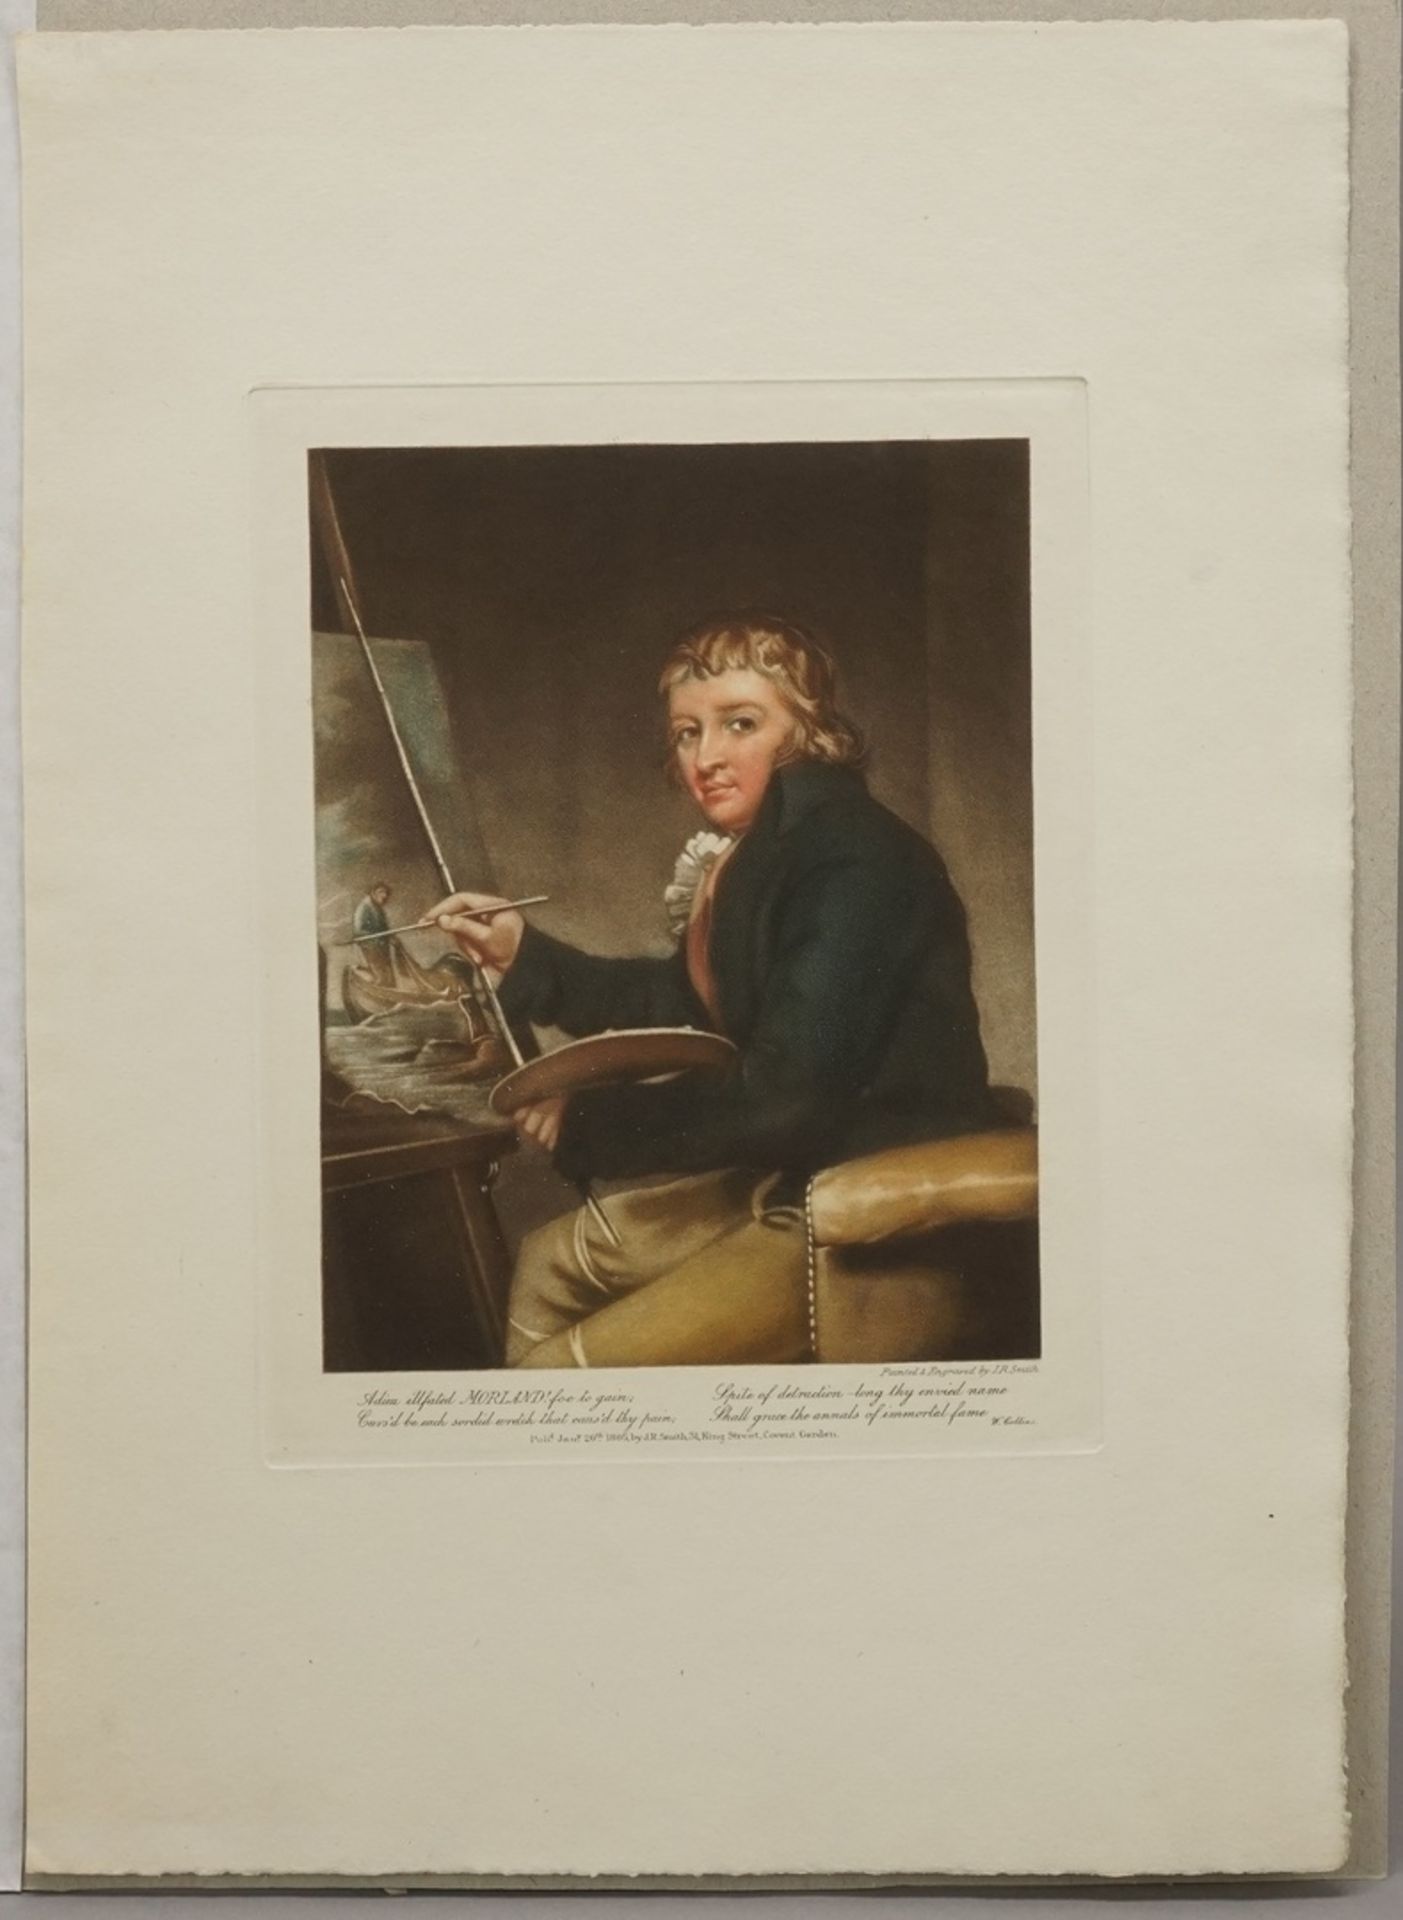 J. R. Smith, "Portrait des englischen Malers George Morland"Farbaquatinta/Arches, datiert 1805, im - Image 3 of 3